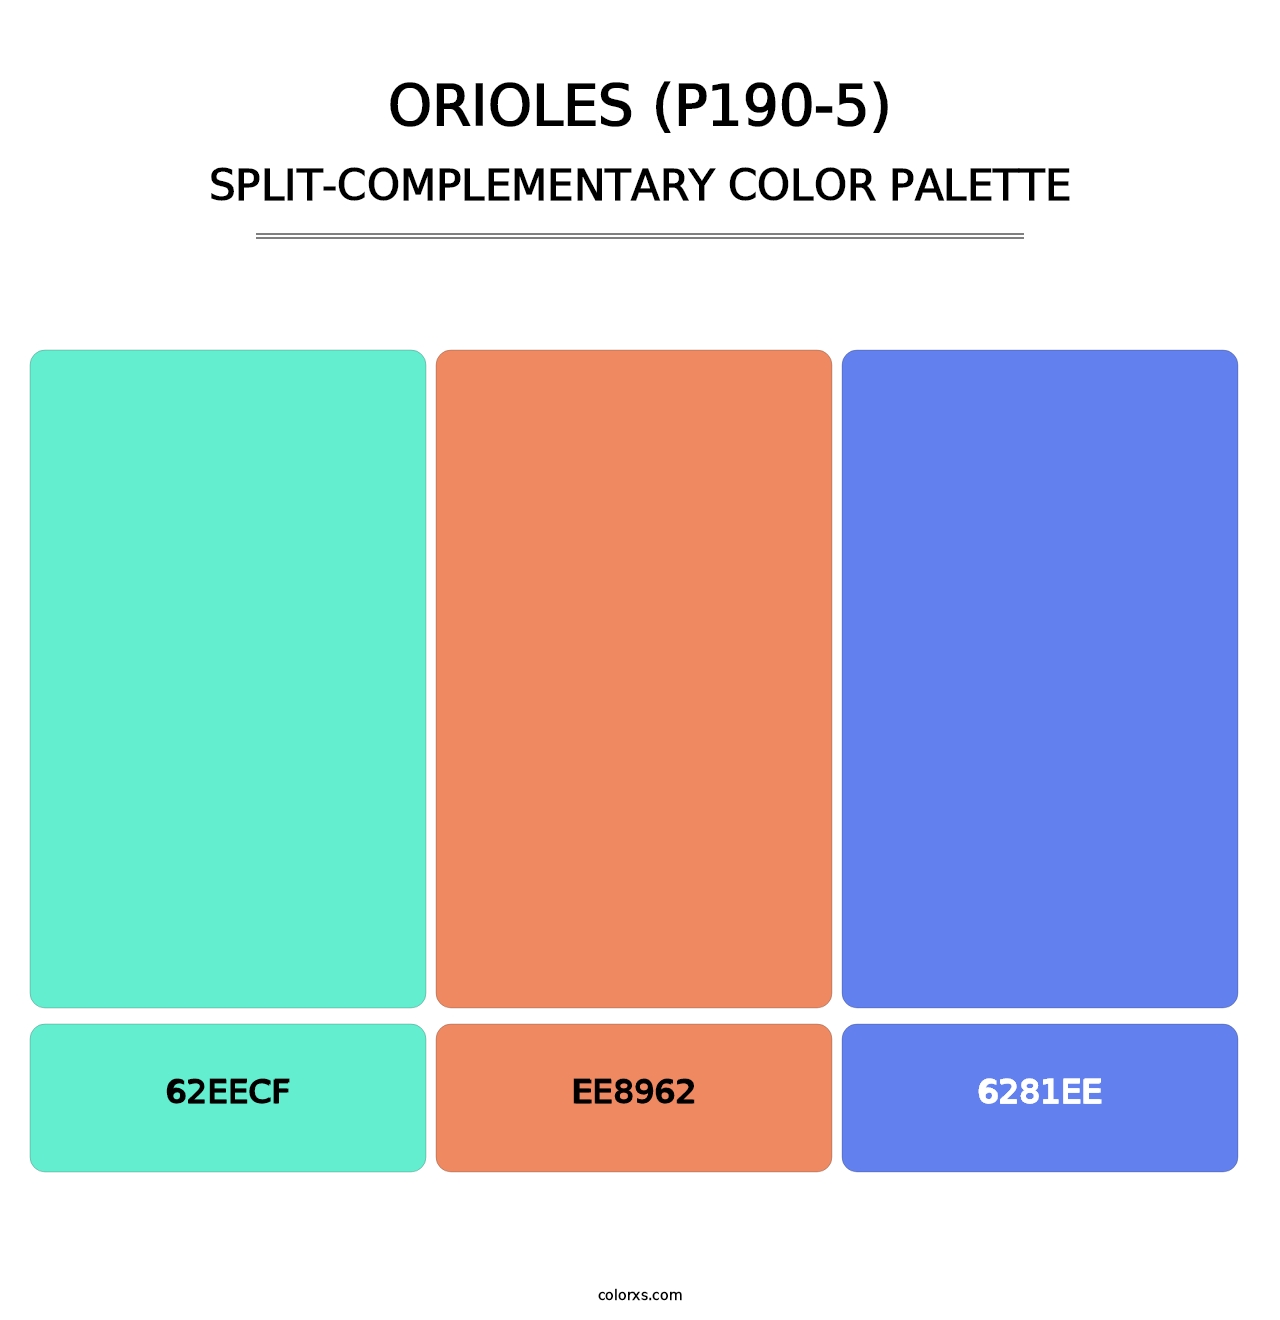 Orioles (P190-5) - Split-Complementary Color Palette